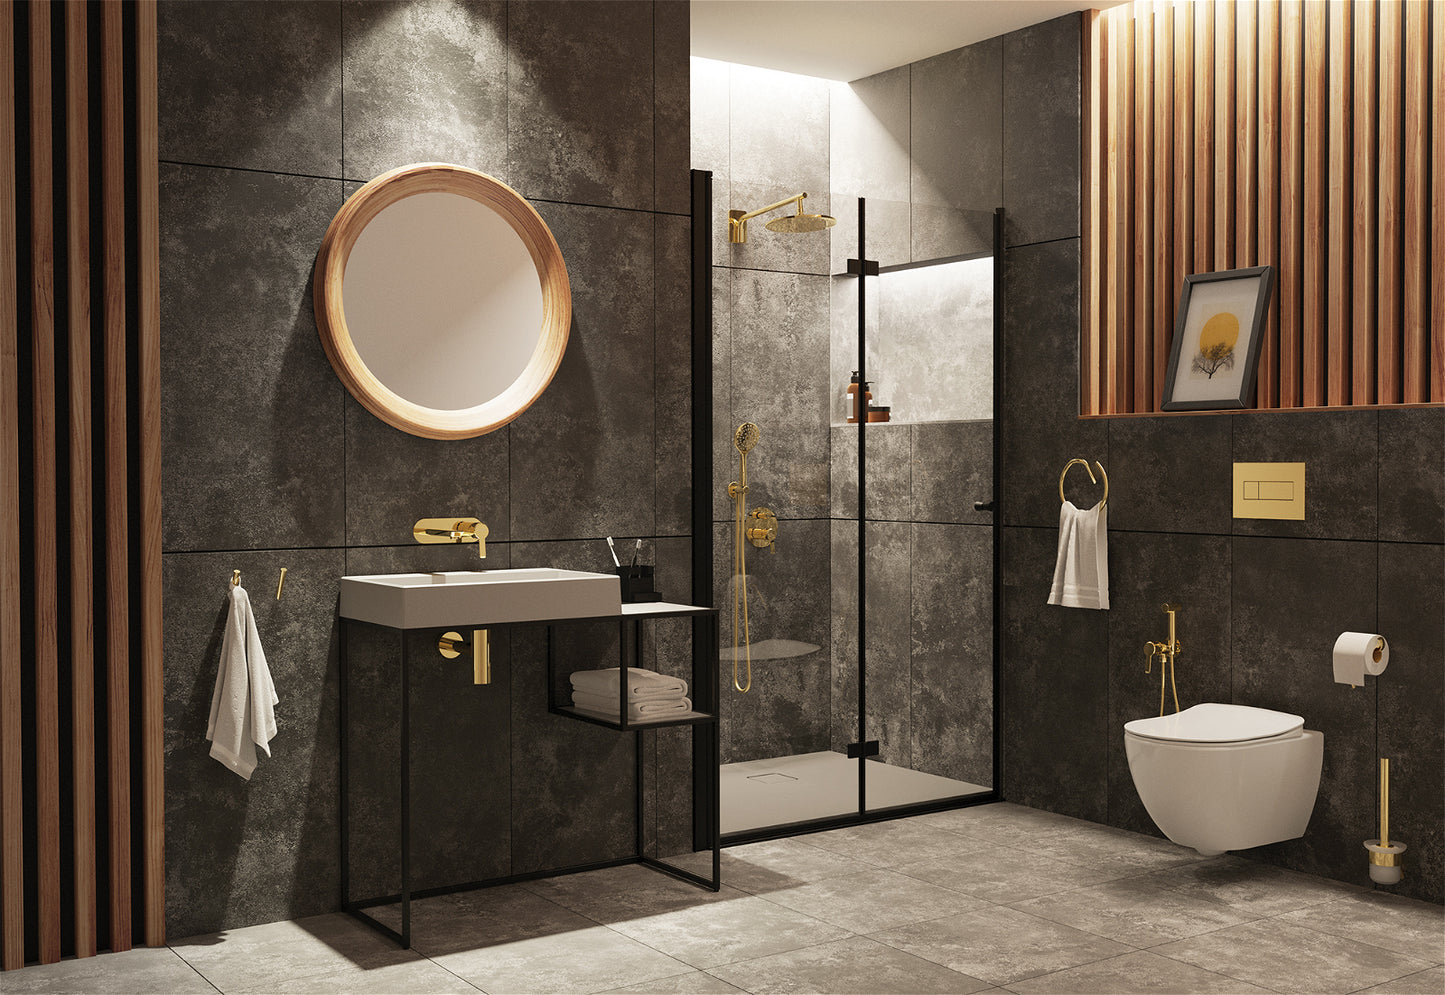 ESR 6 vienā slēptais tualetes komplekts balts/zelts - N1 Home